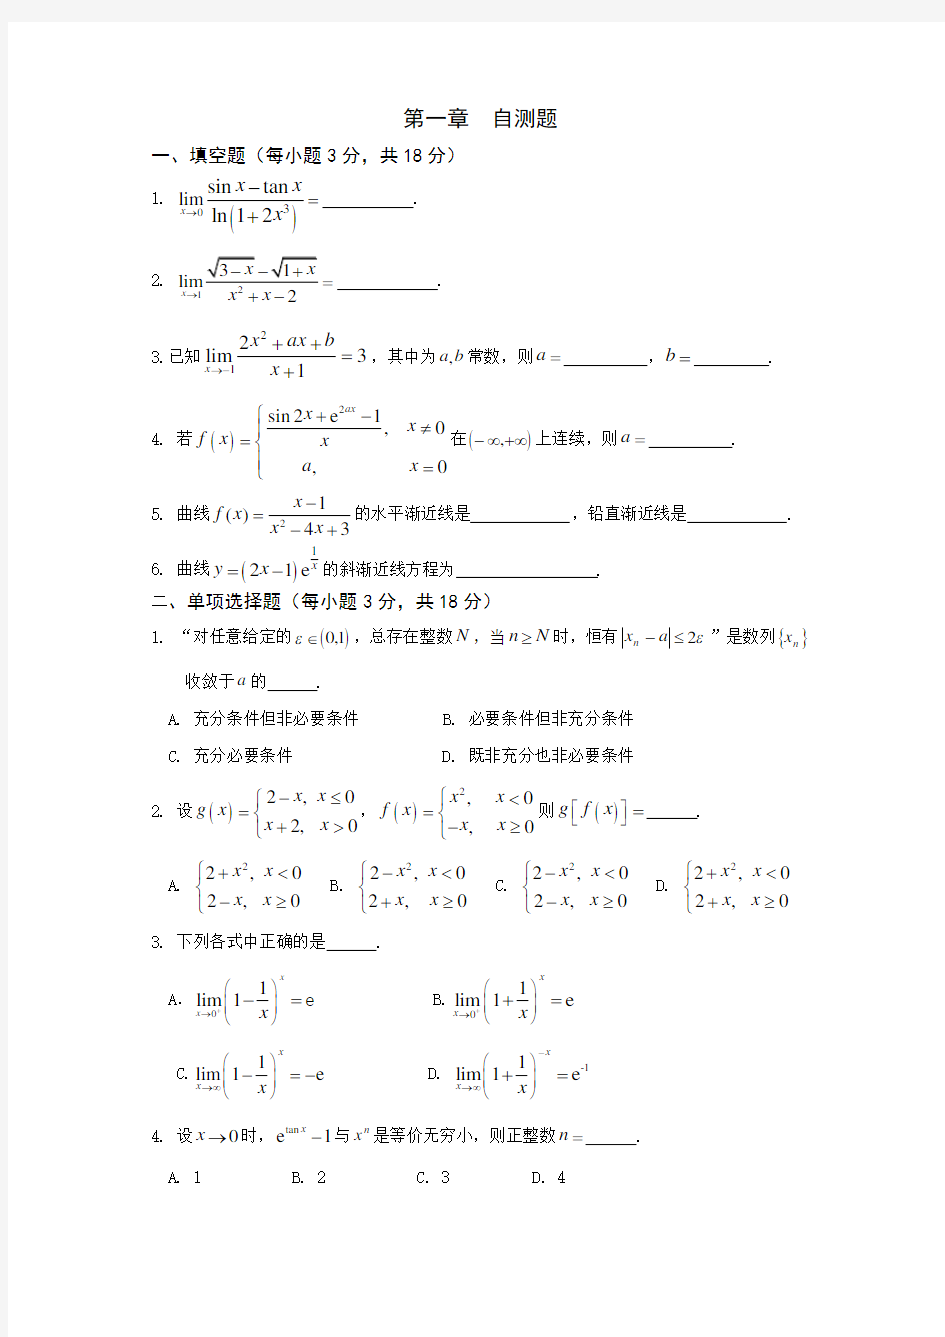 【推荐】高等数学练习题附答案